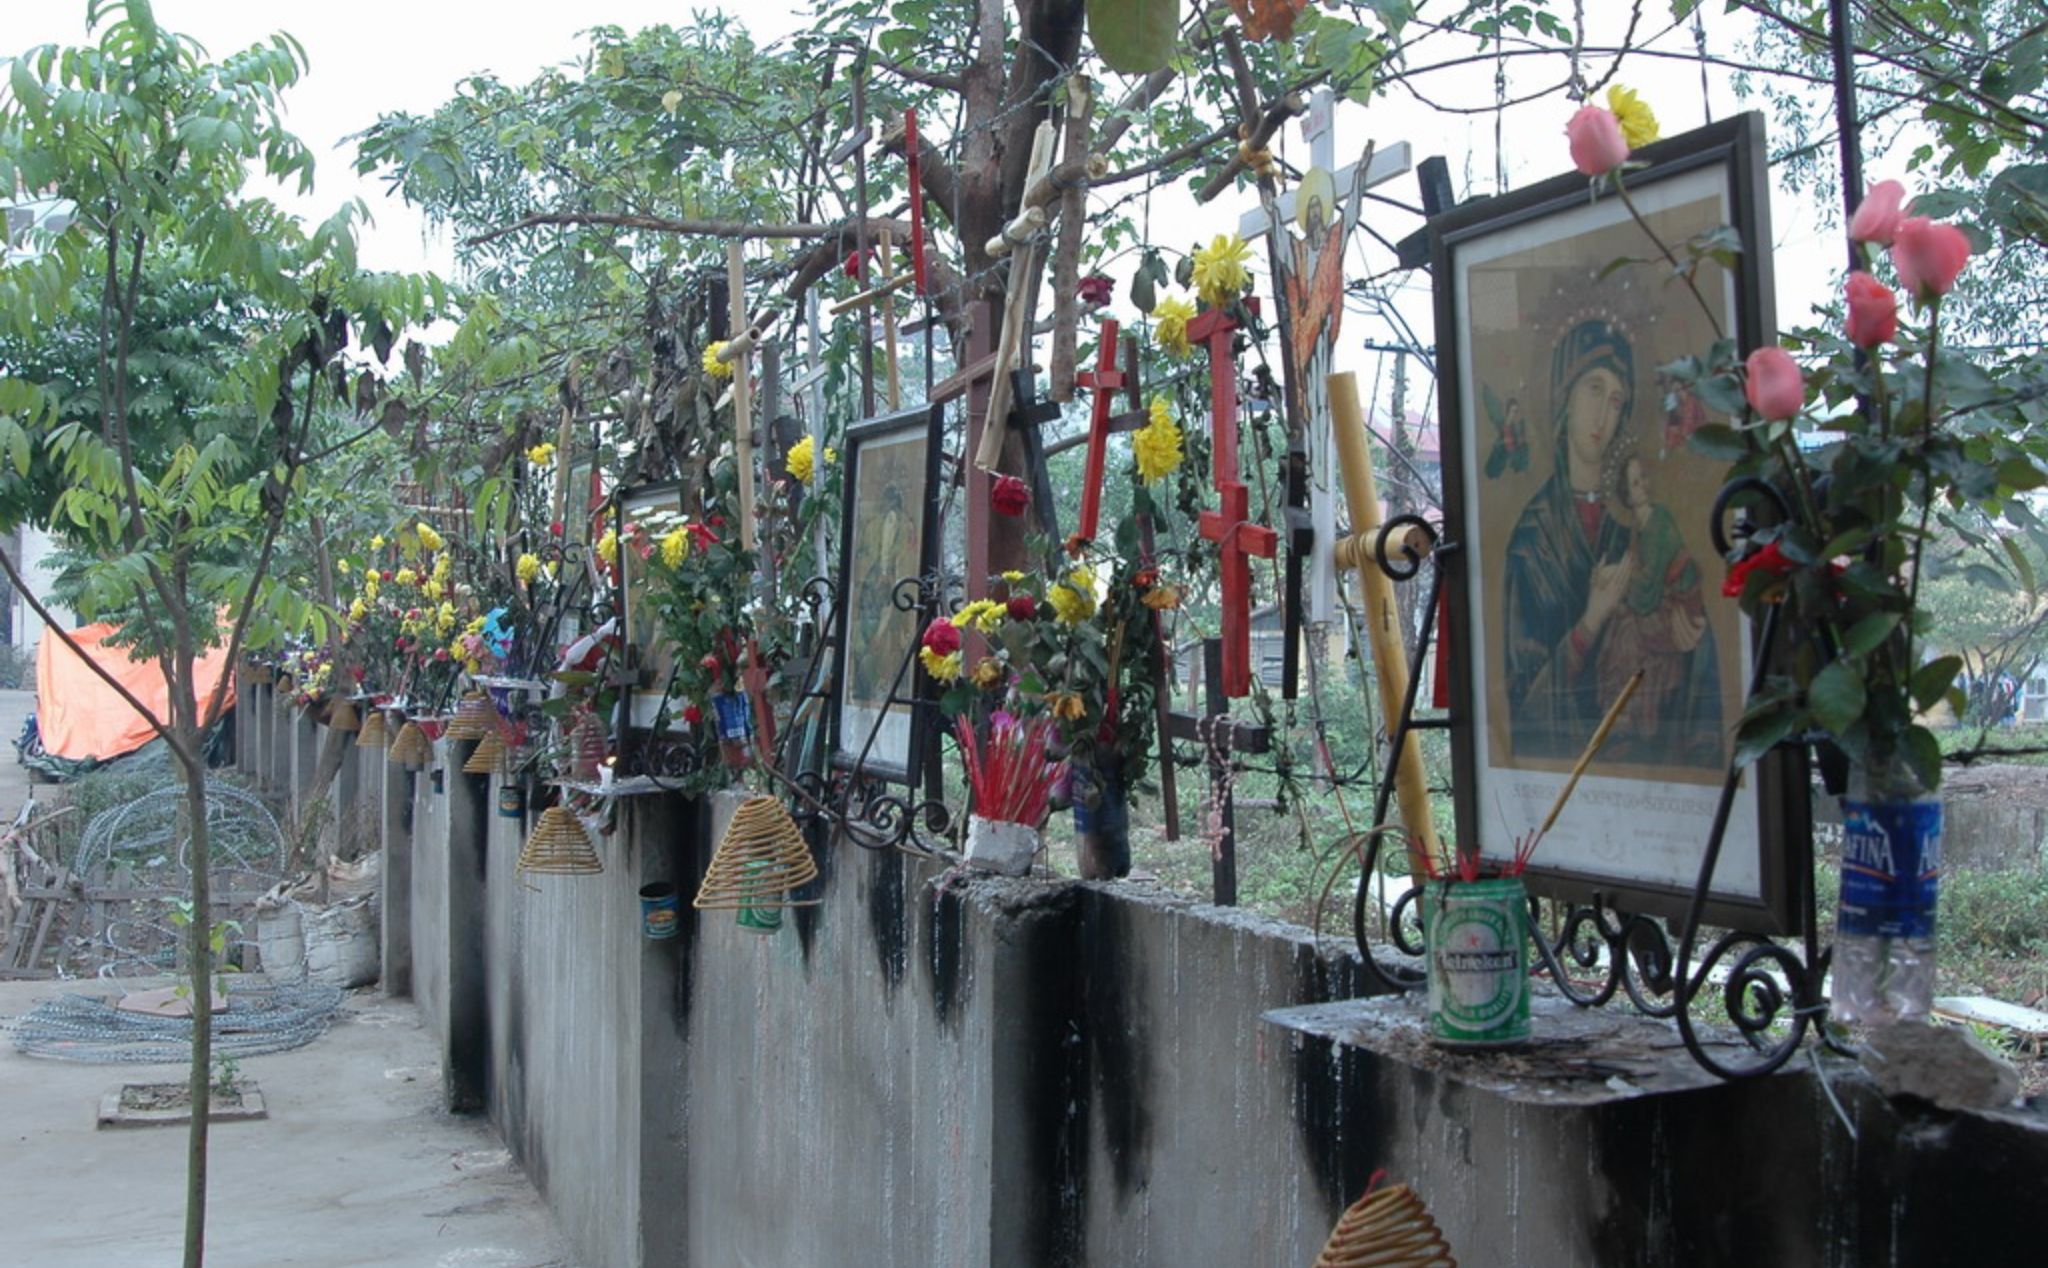 phailamgi_Lập trường xuyên suốt của Hội đồng Giám mục Việt Nam đối với các cơ sở bị trưng dụng...jpg